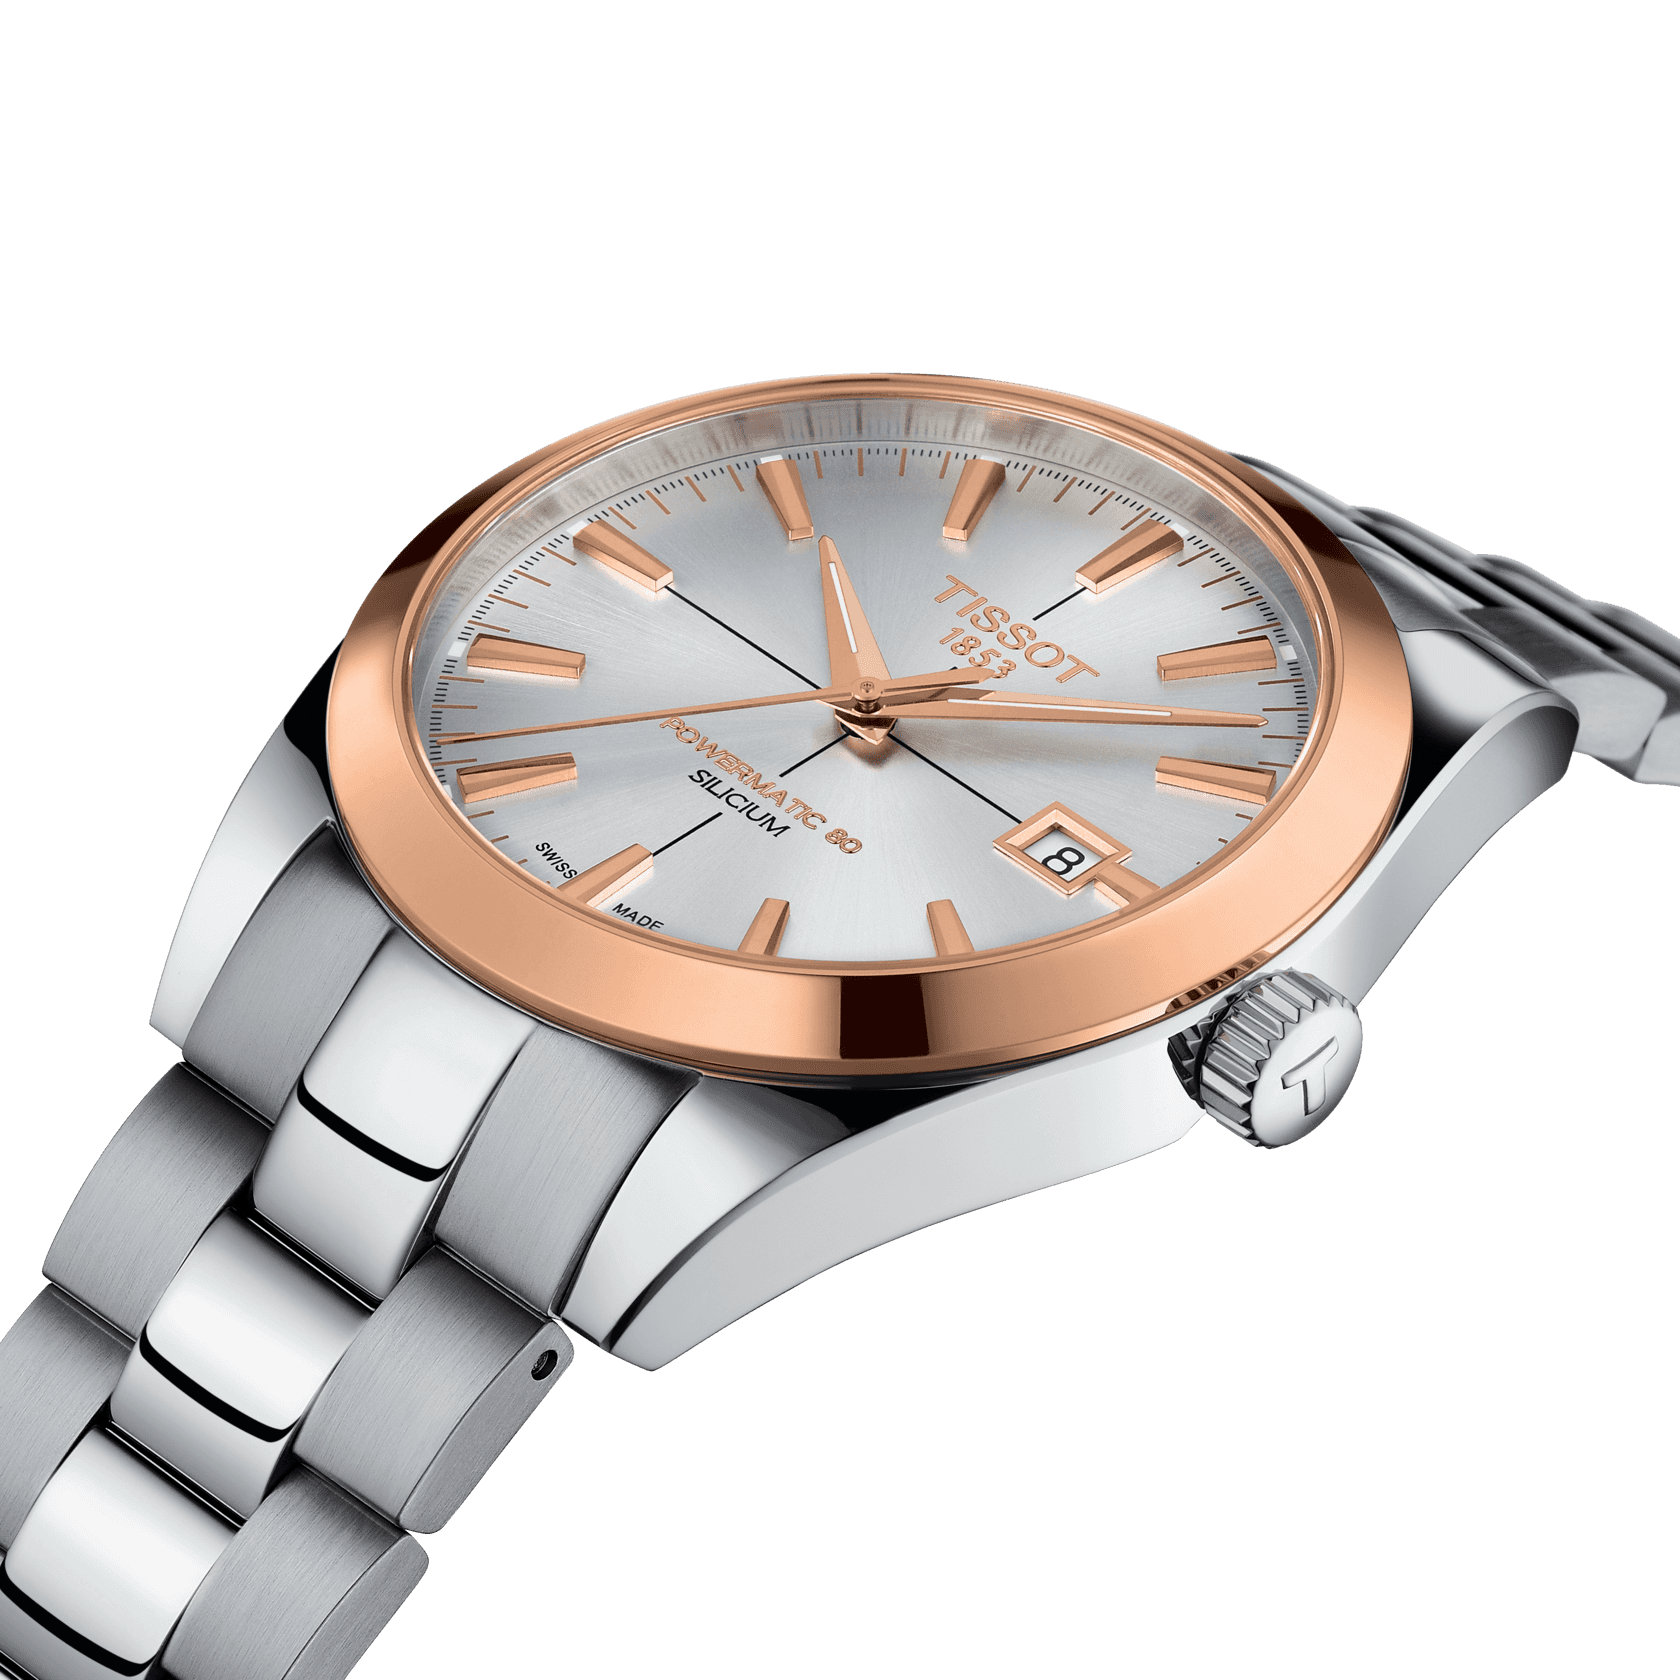 Replica Bulova Watches For Sale